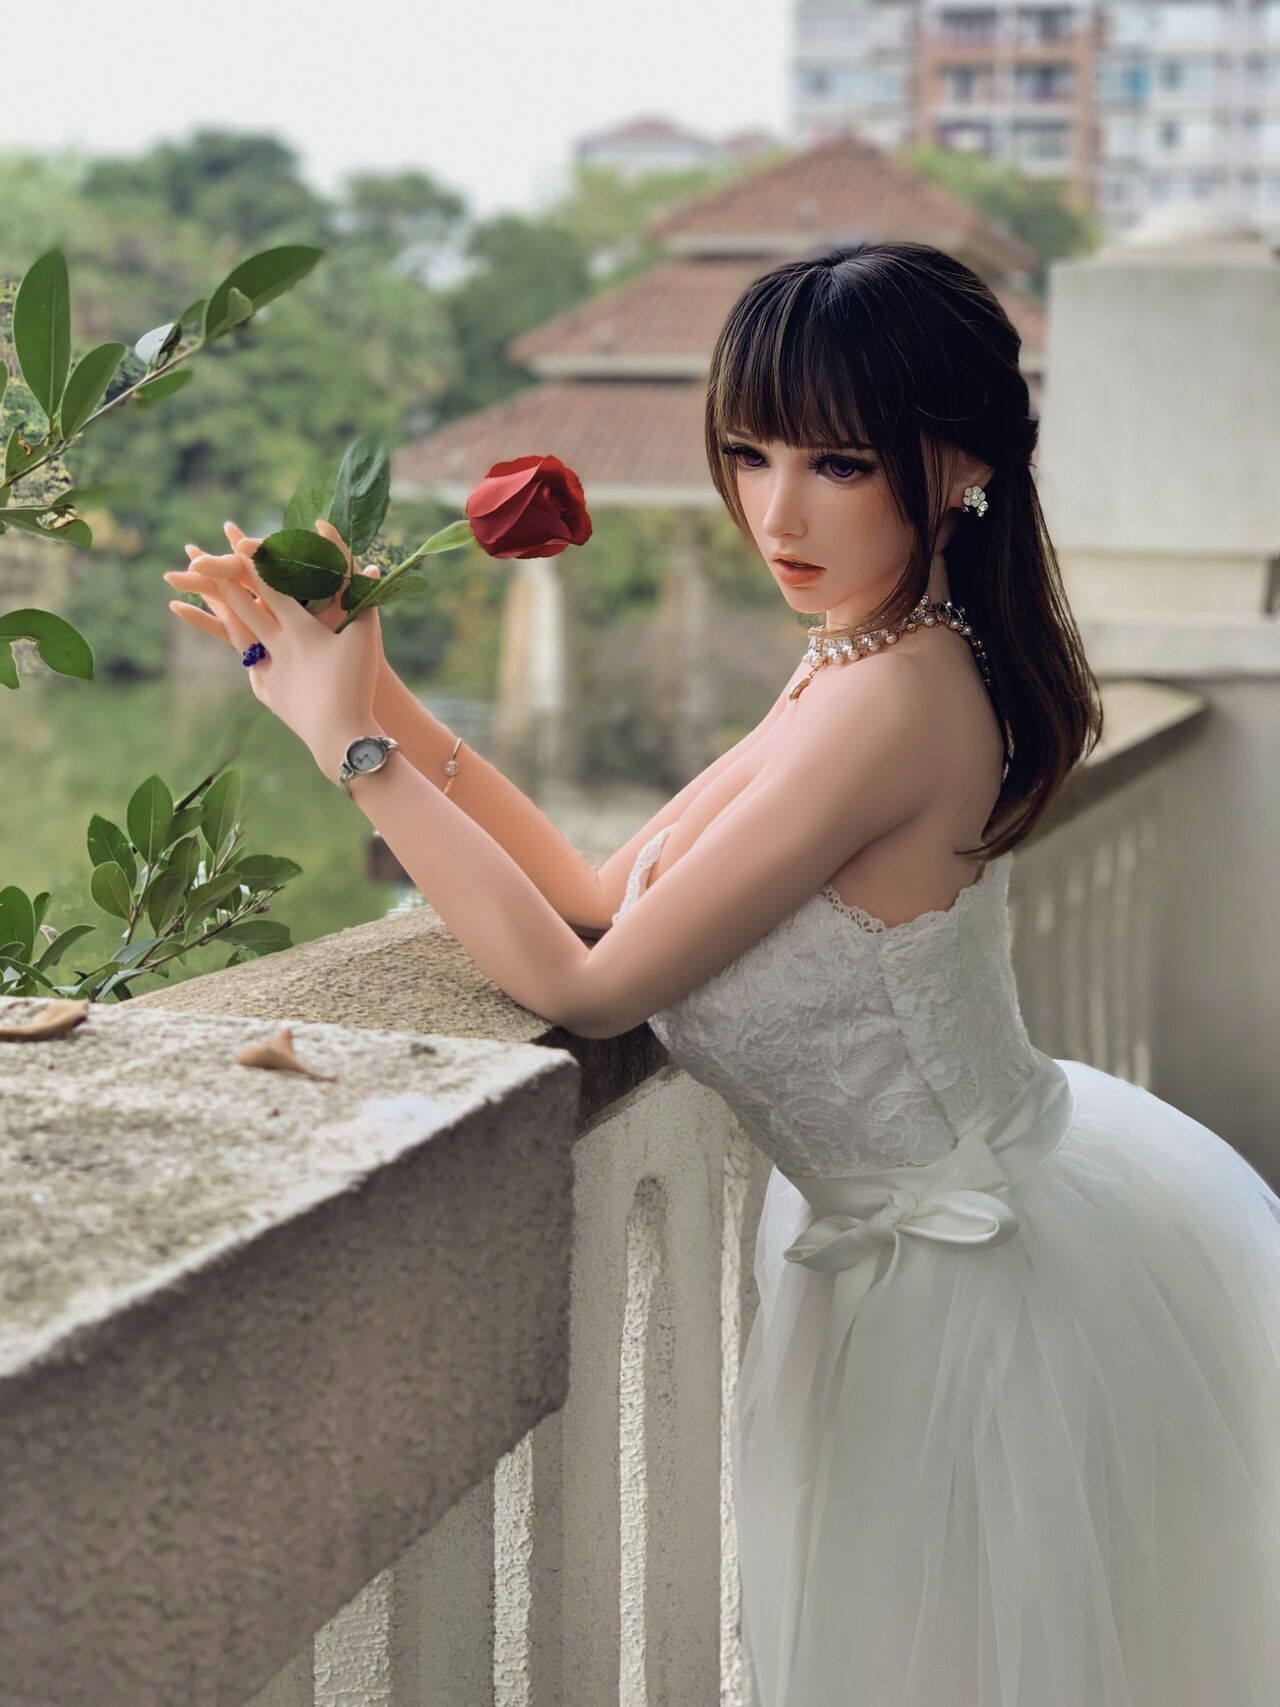 150CM HB031 Kurai Sakura-Bride in bud, to be married! by QIN 18